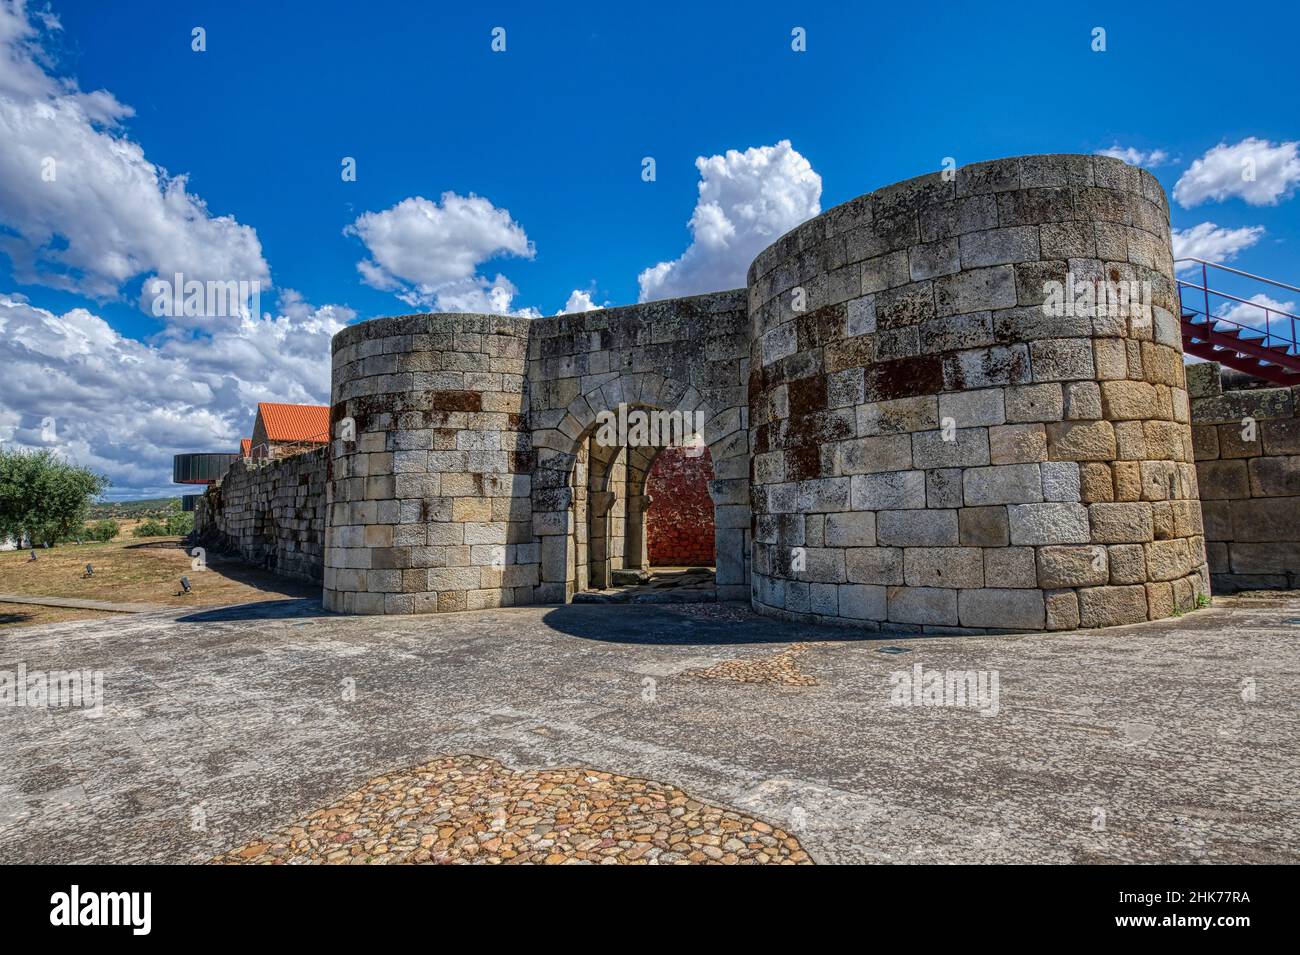 Porta d'ingresso principale, villaggio di Idanha-a-Velha, Serra da Estrela, Beira alta, Portogallo Foto Stock